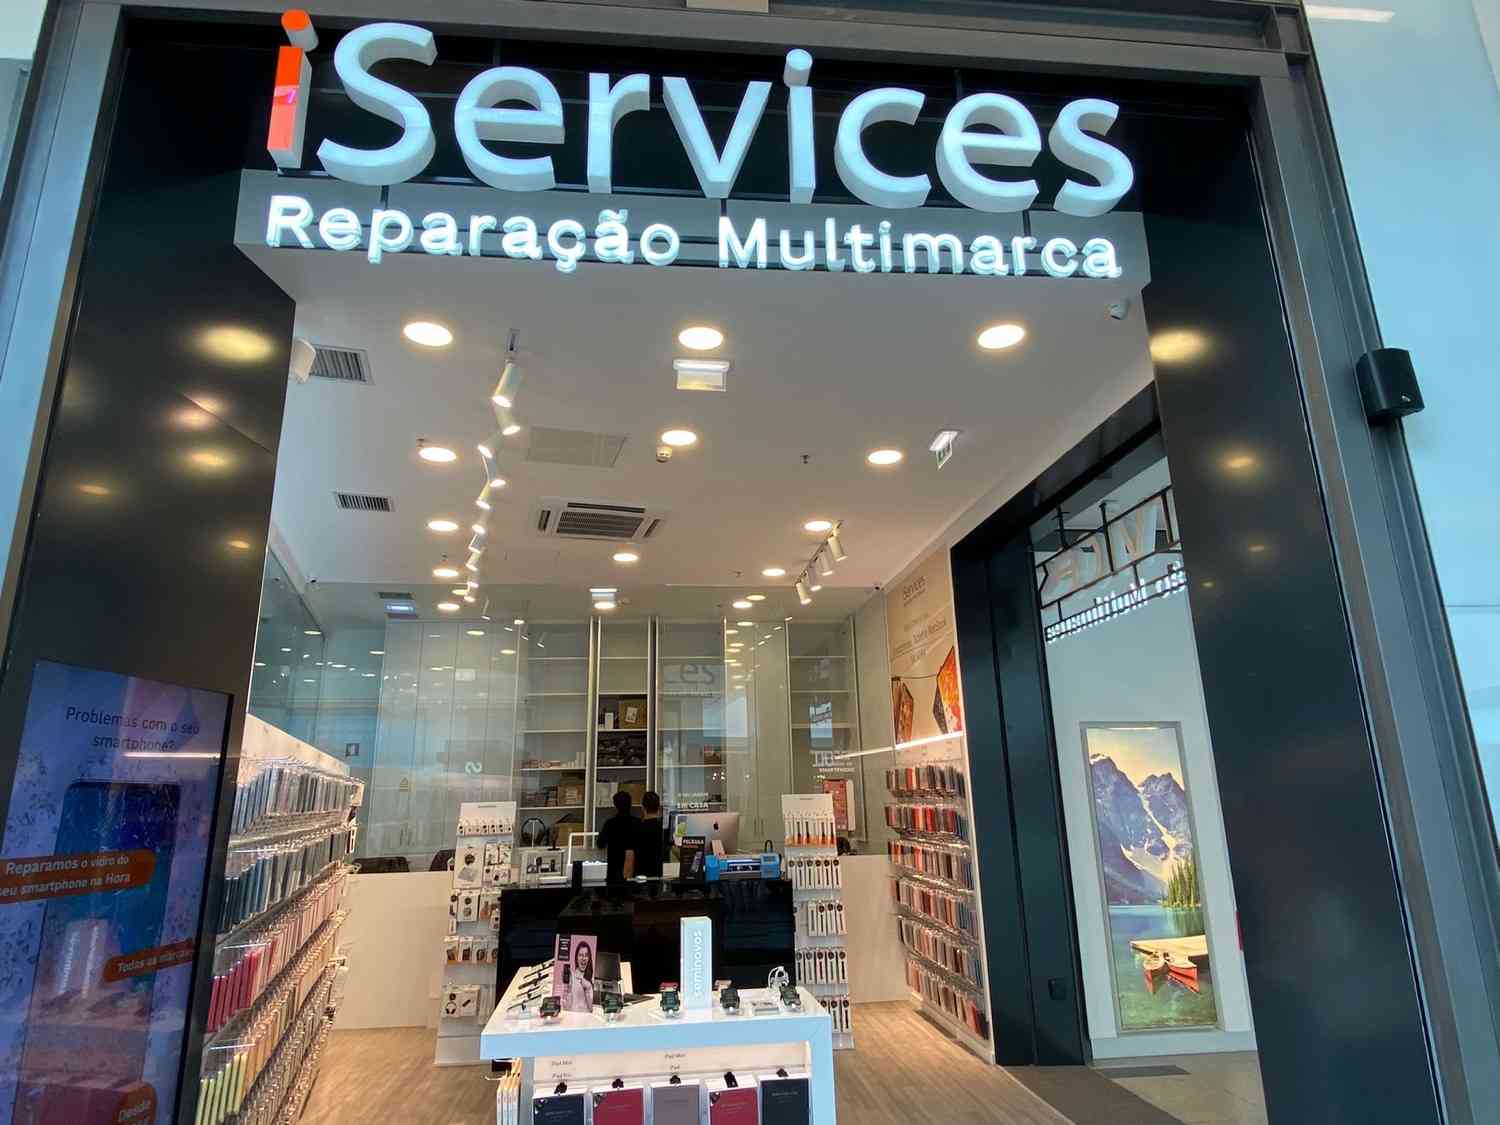 Nous sommes arrivés à notre centre commercial&nbsp;! Nous avons ouvert iServices Vila Real  blog post